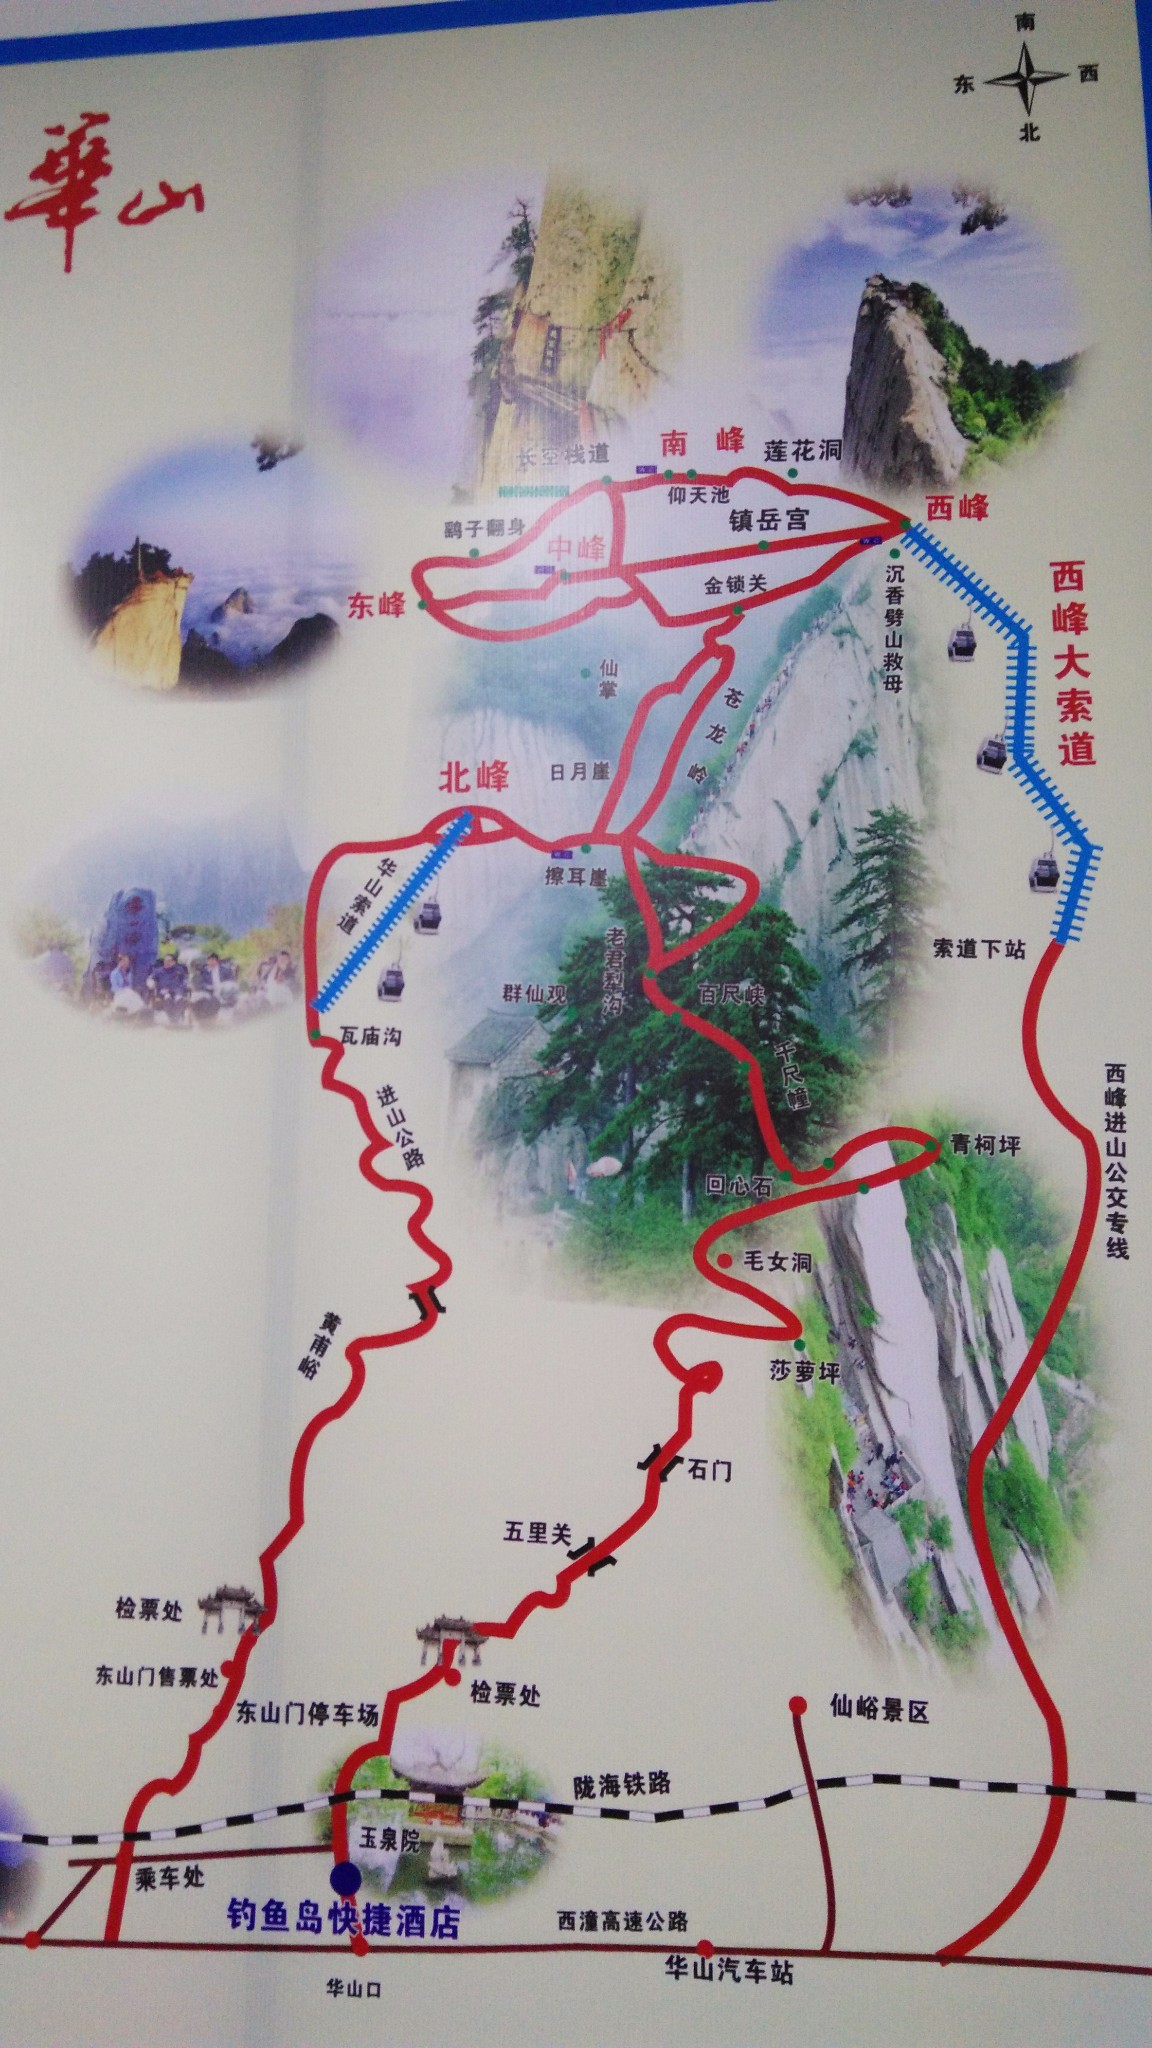 先上一张华山的全景图,我们选择的是中间那一条最长,最曲折的路,入口